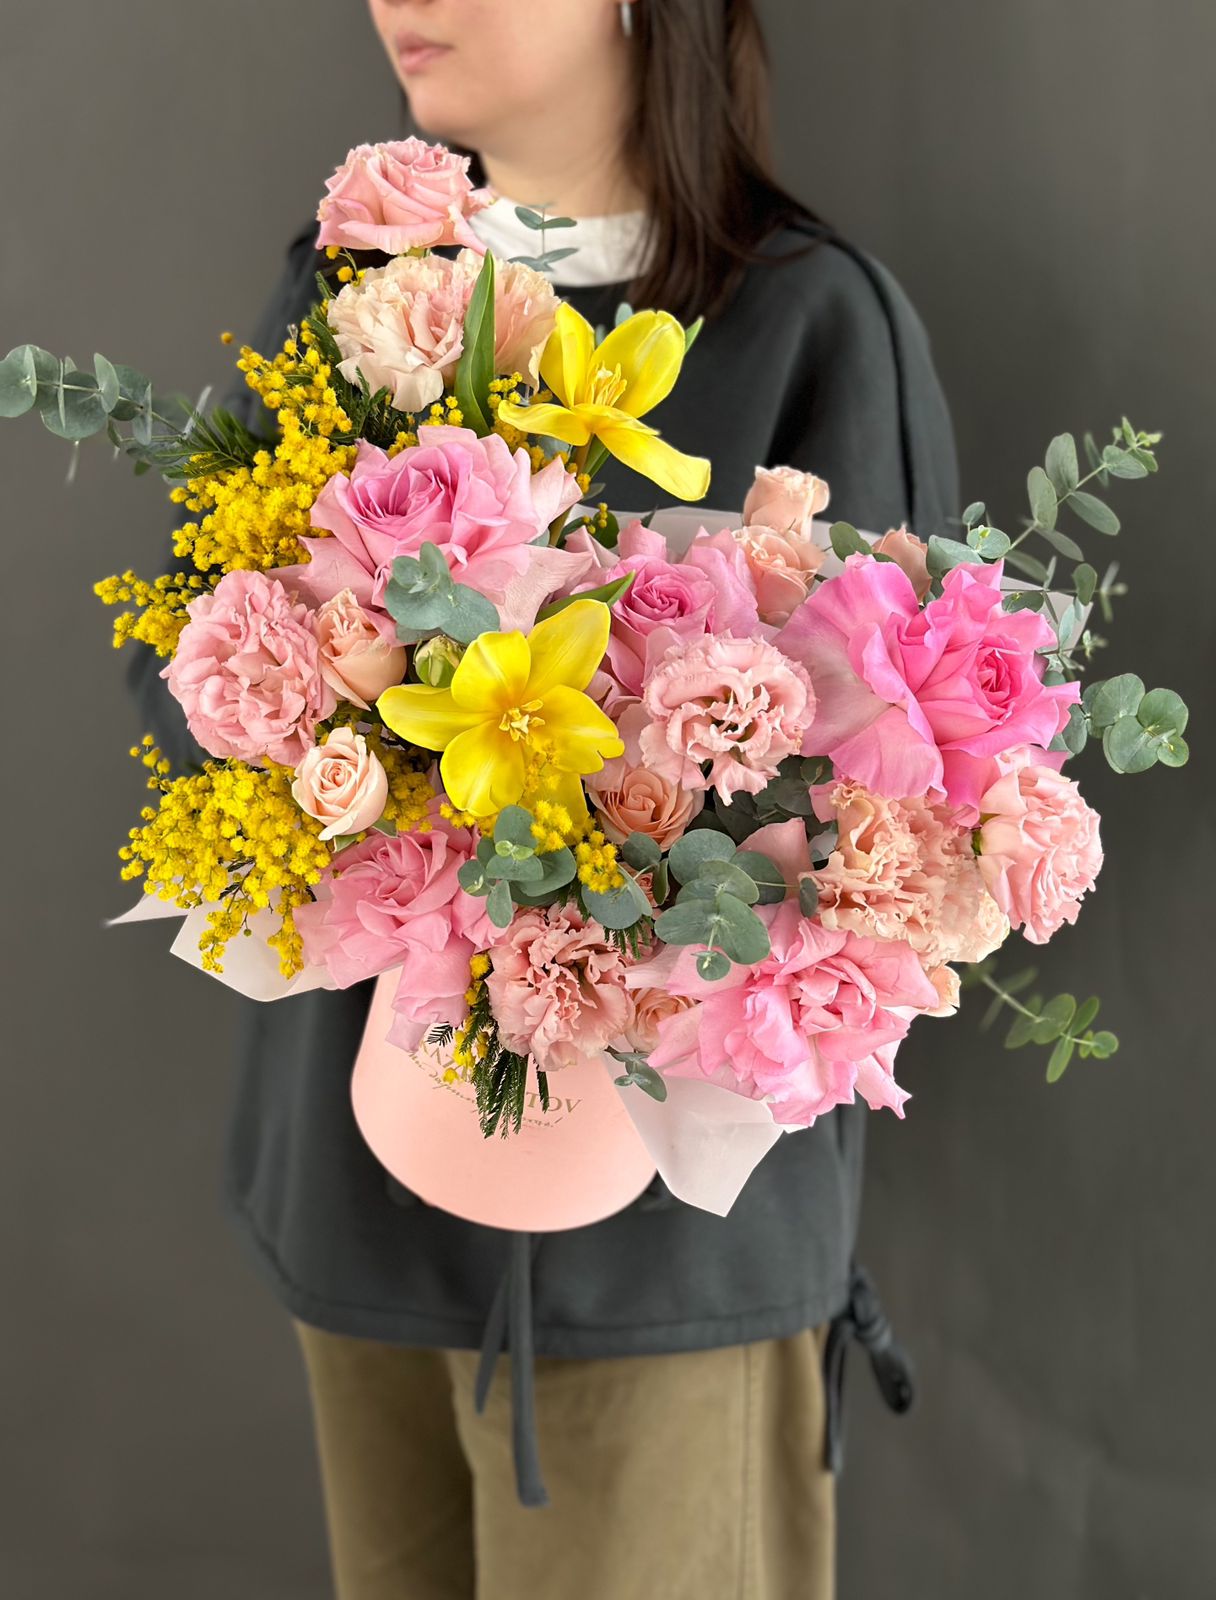 Композиция "Tender Anna" из роз, лизиантусов, тюльпанов и мимозы